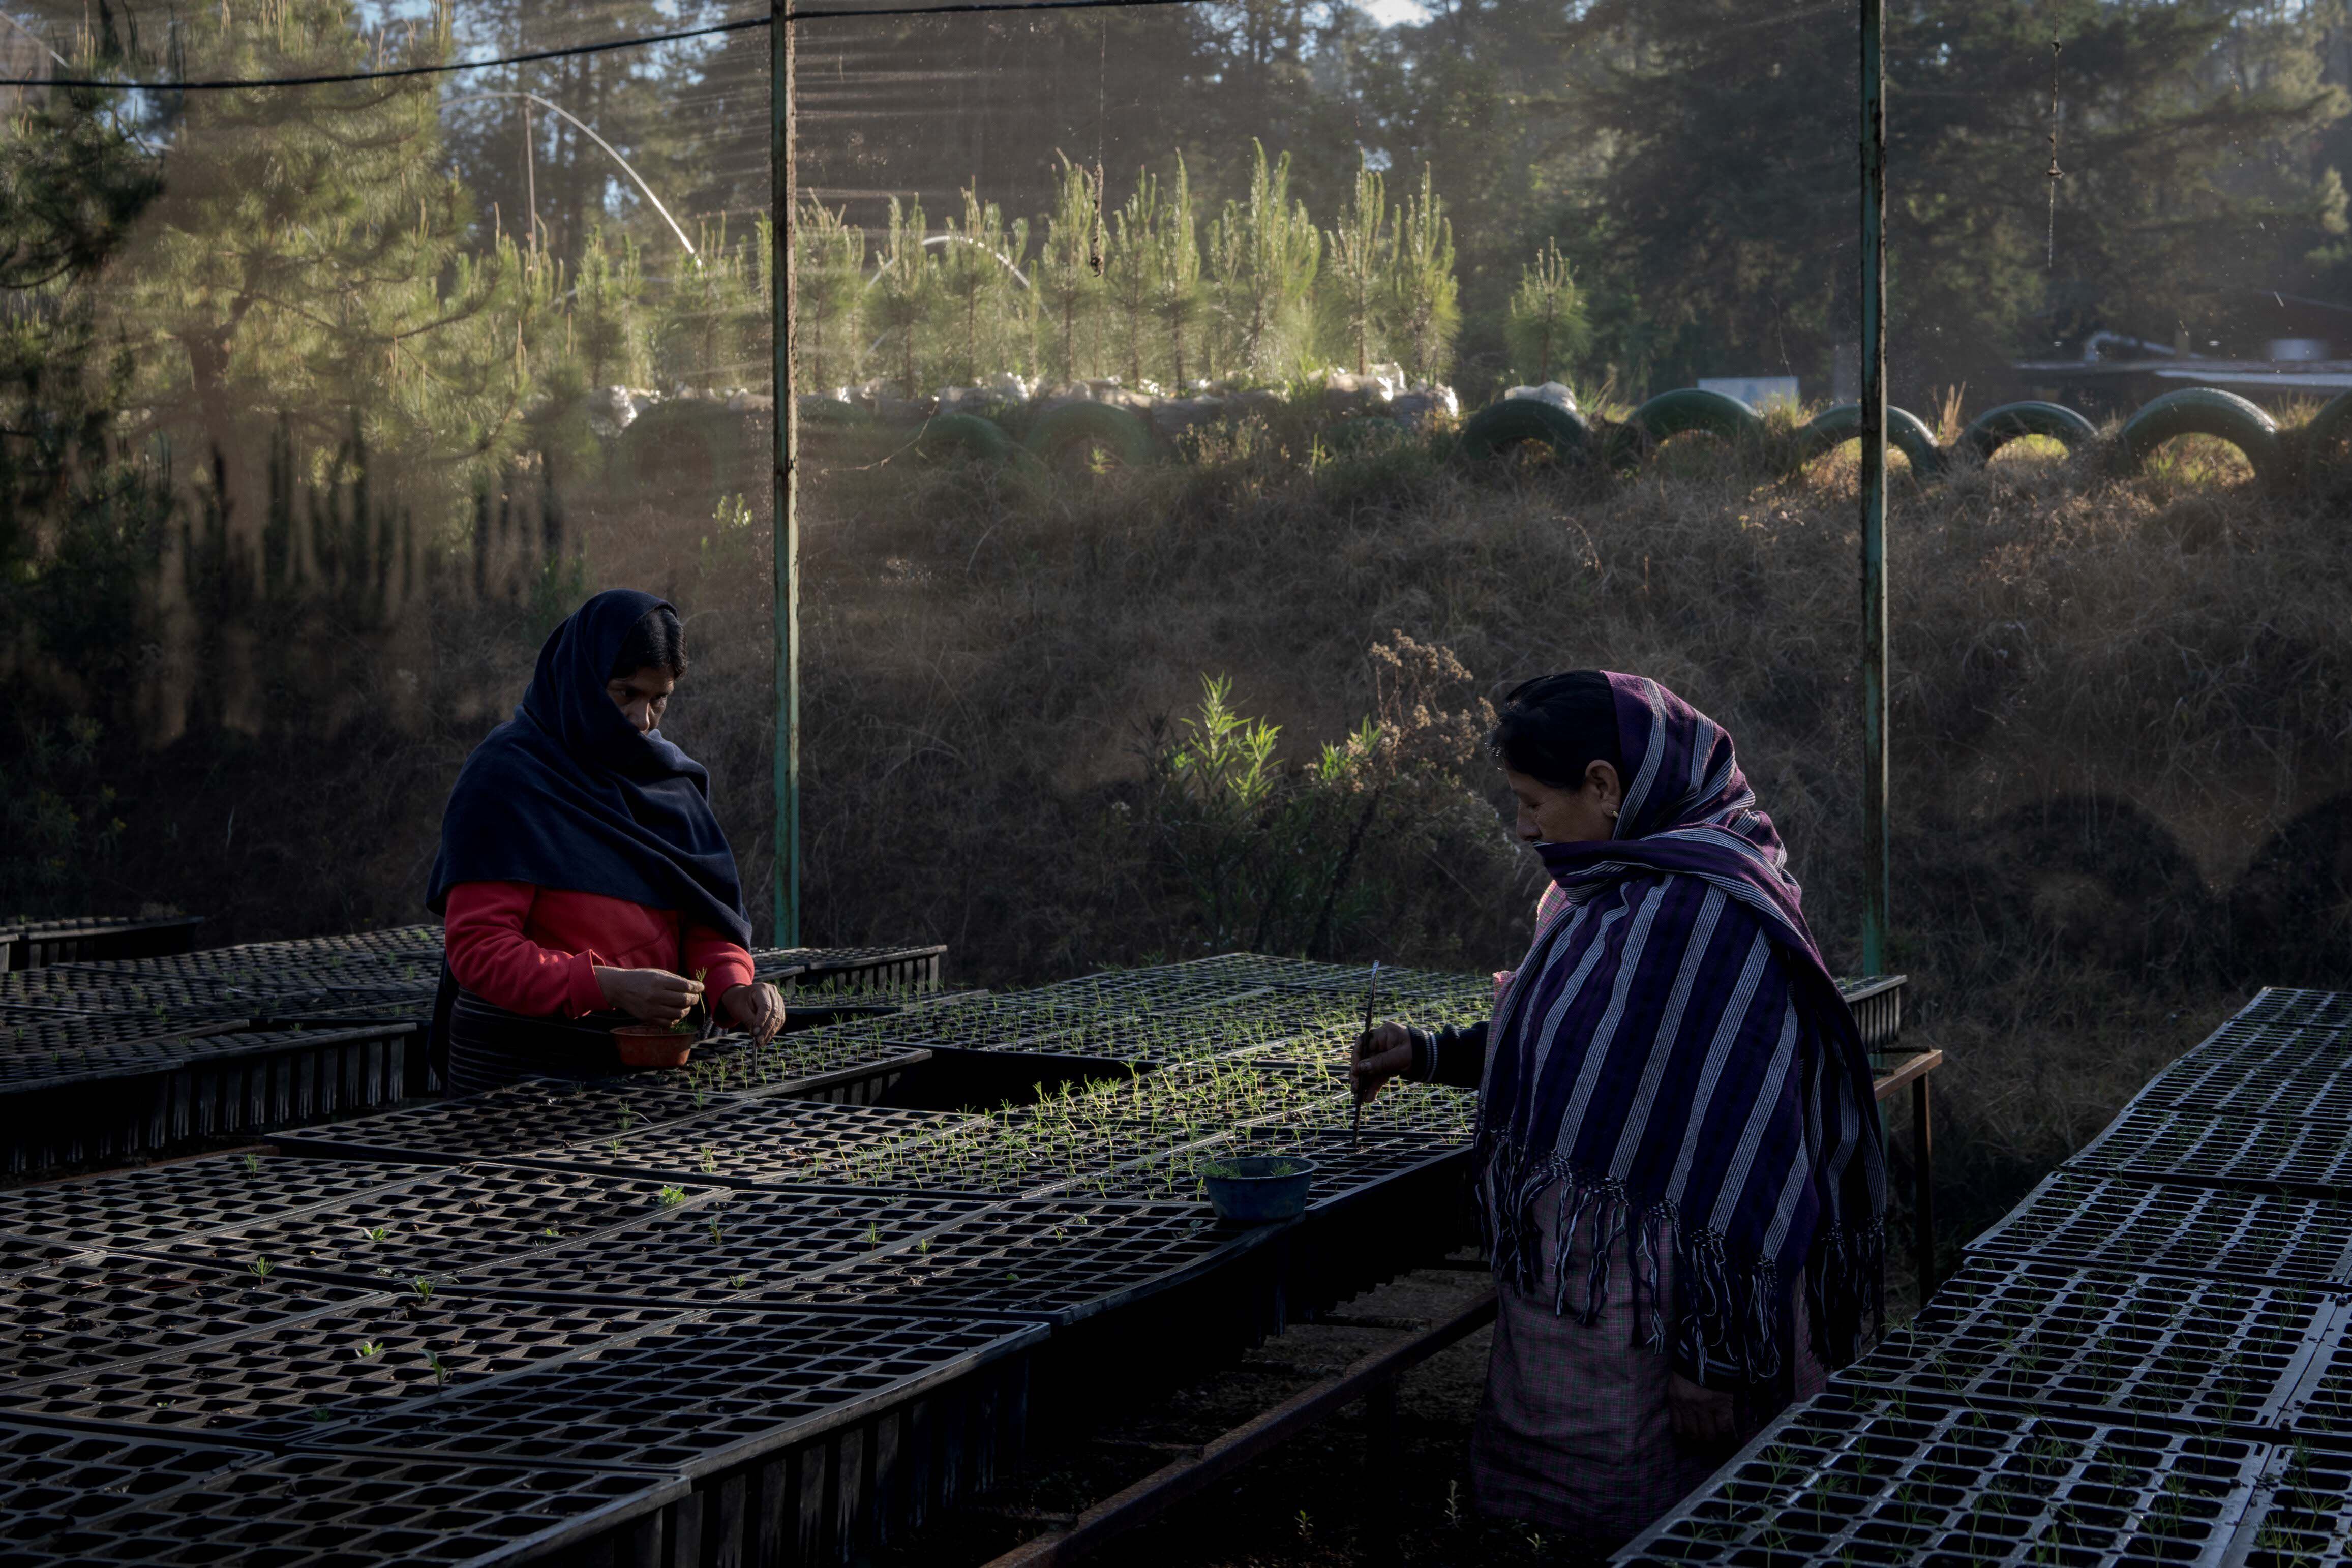 Mujeres purépecha en el invernadero a las afueras de Cherán.